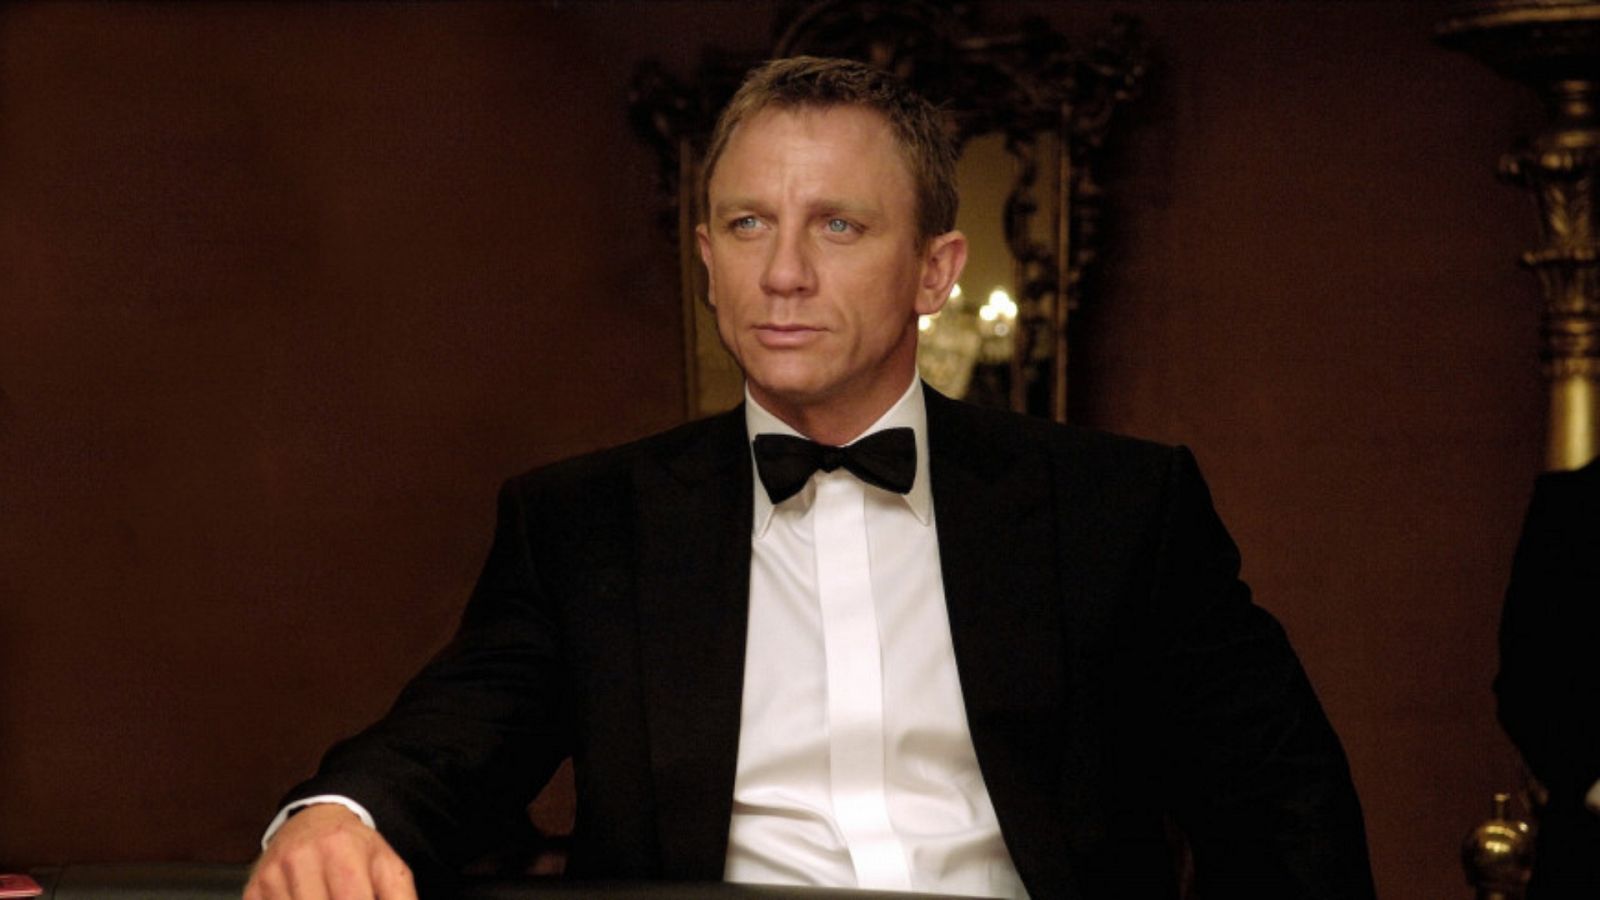 007': dónde ver la saga de películas de James Bond